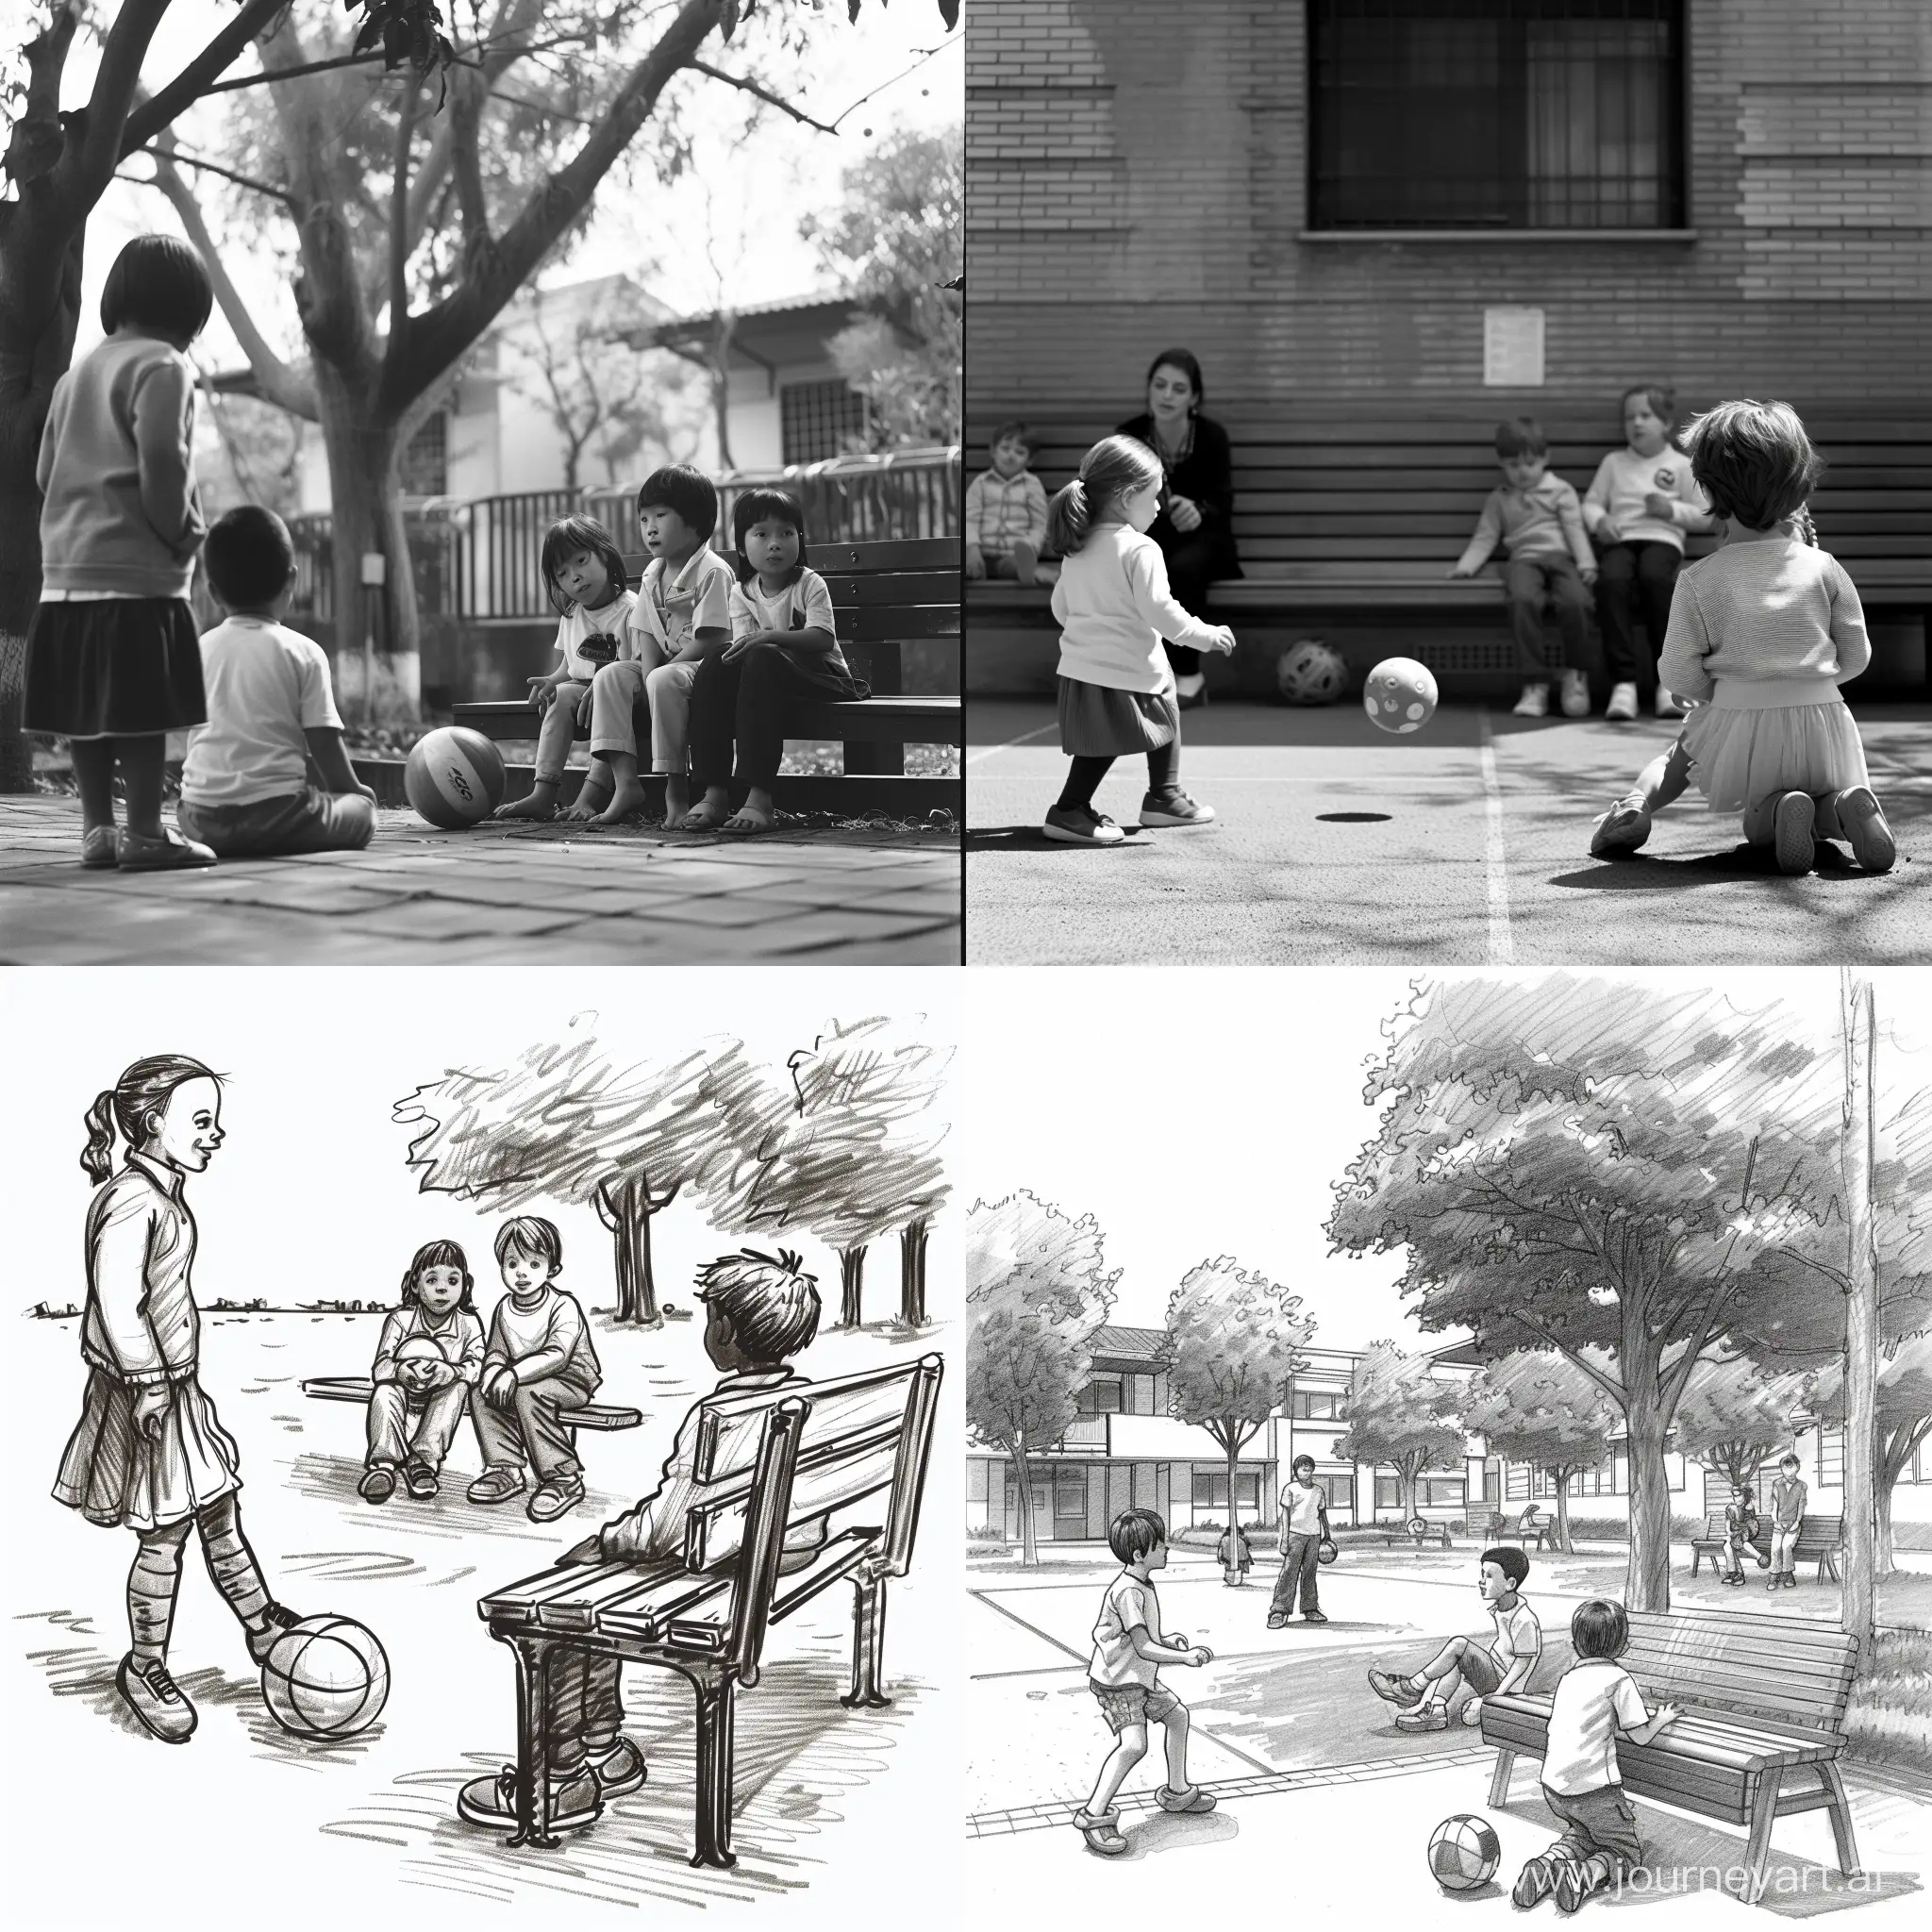 Cour d’école - 3 enfants jouent au ballon. 2 enfants sont assis sur un banc. 1 maître surveille.